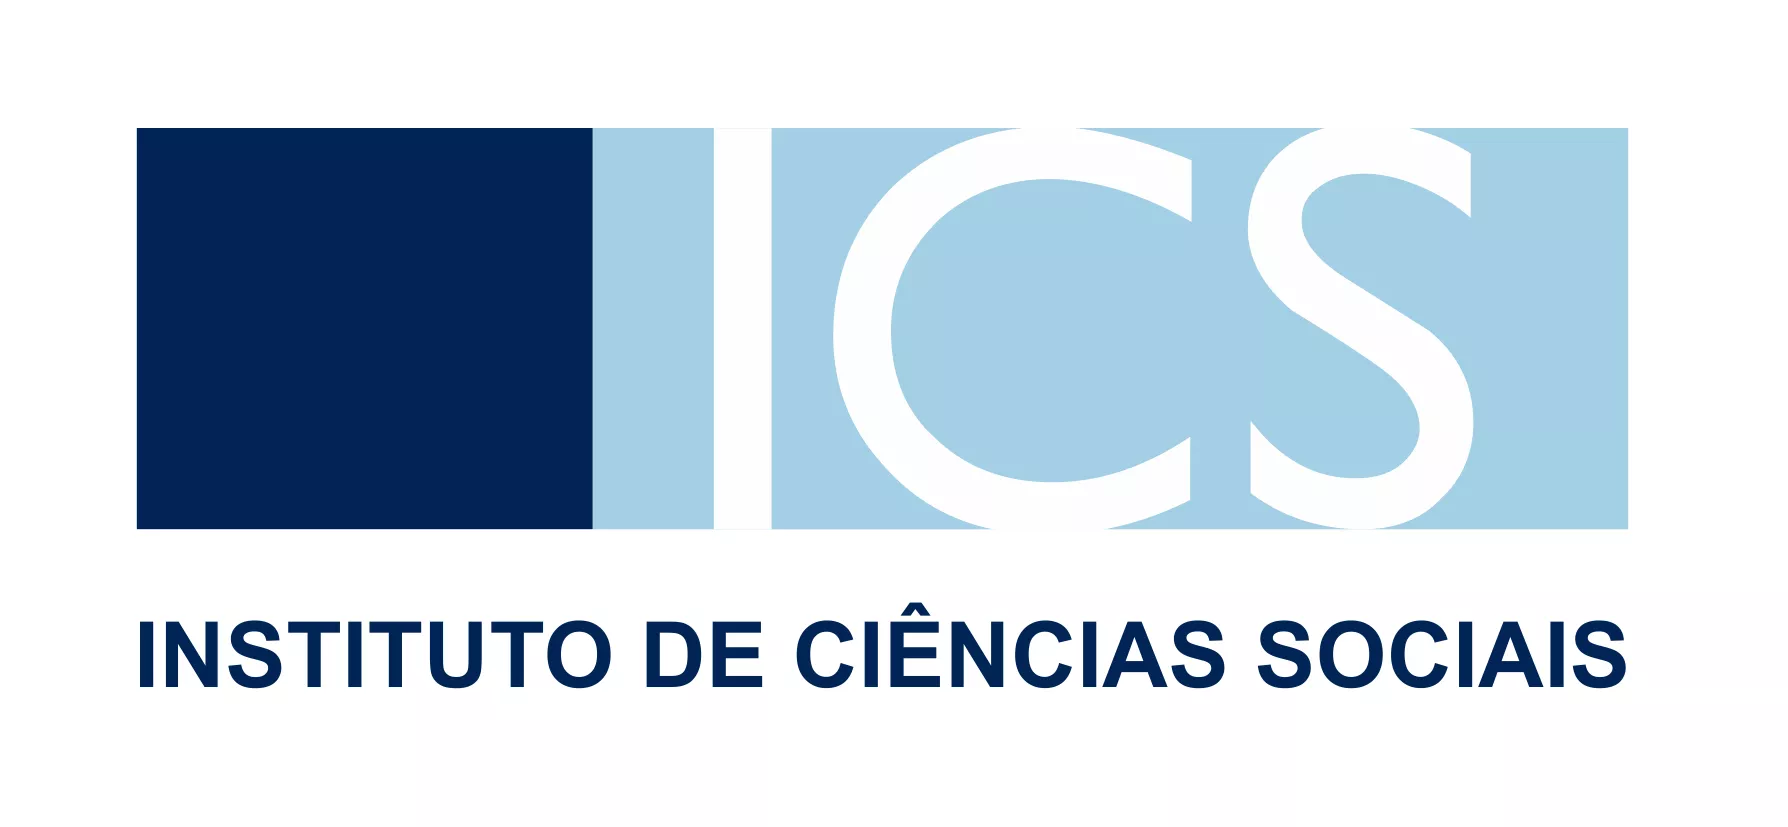 Instituto de Ciências Sociais (ICS) da Universidade de Lisboa